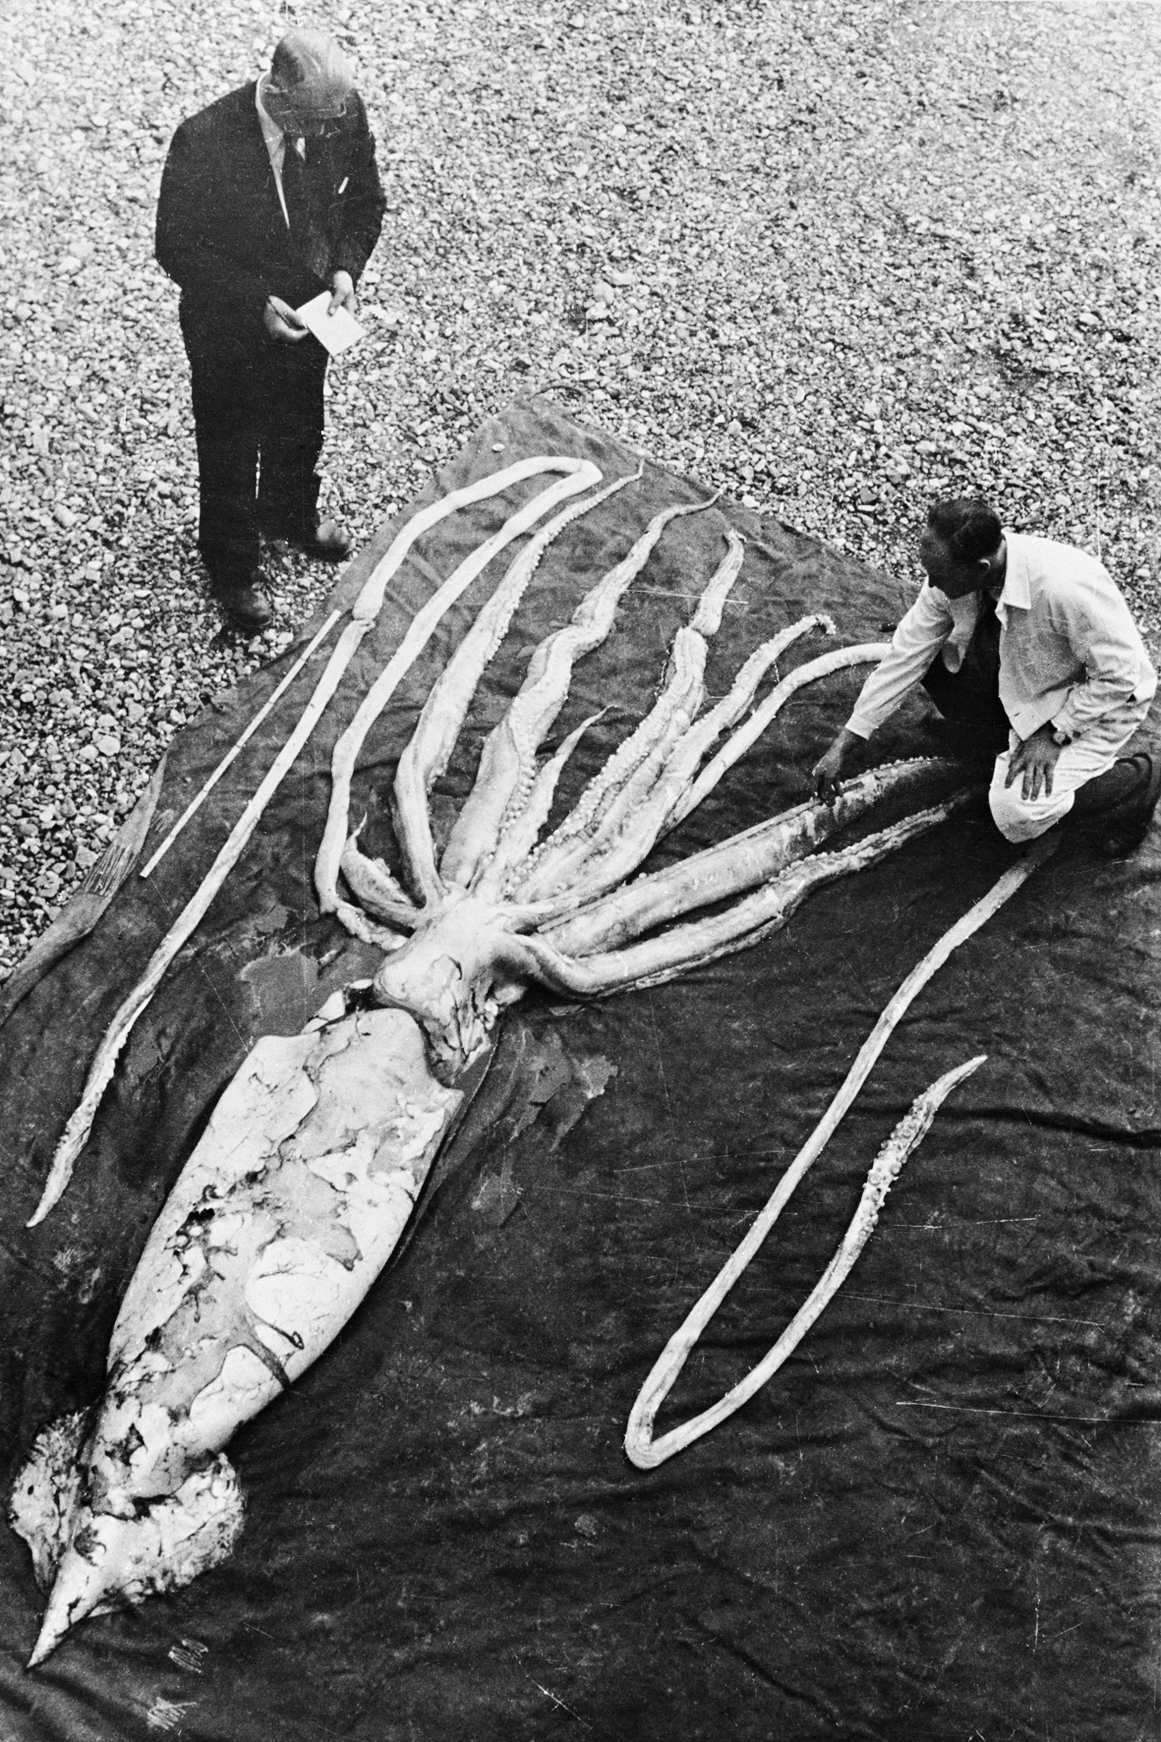 Een reuzeninktvis gevonden in Ranheim in Trondheim op 2 oktober 1954 wordt gemeten door de professoren Erling Sivertsen en Svein Haftorn. Het exemplaar (op een na grootste koppotigen) werd gemeten tot een totale lengte van 9.2 meter. NTNU Museum voor natuurlijke historie en archeologie / Wikimedia Commons